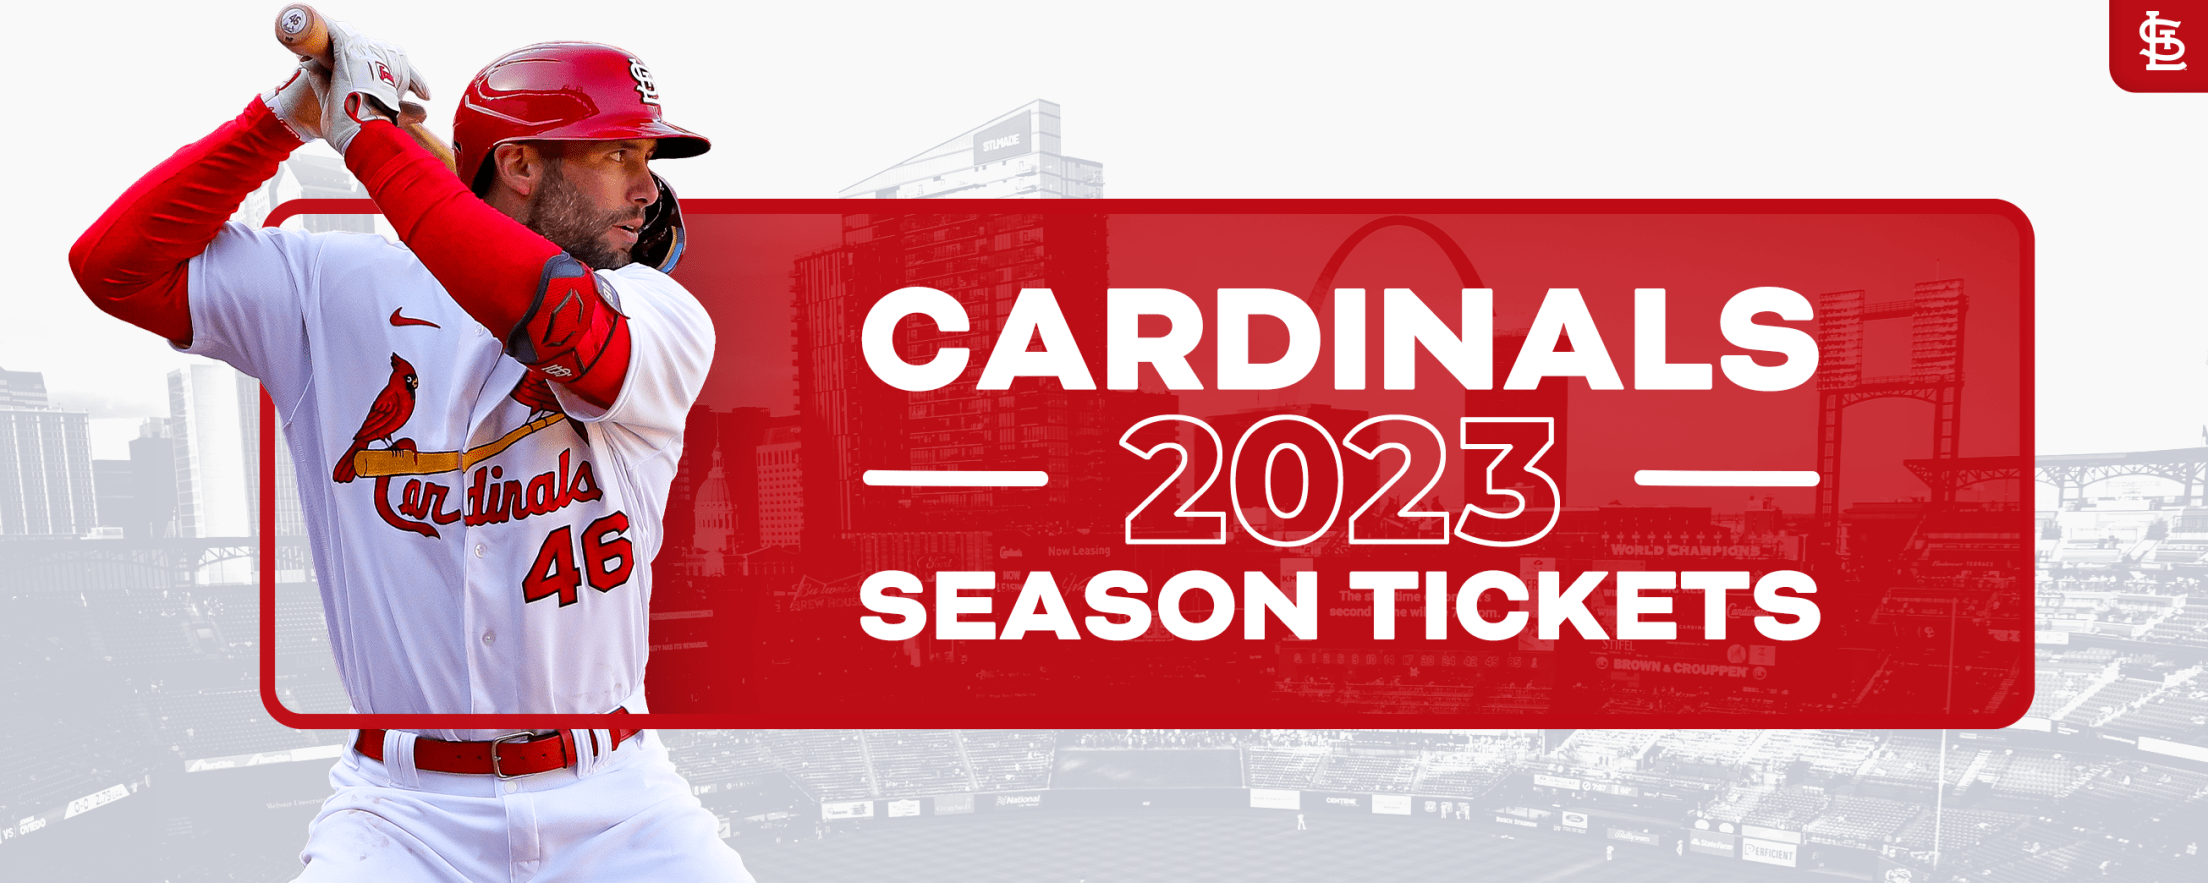 MLB London Series 2023 Cardinals vs Cubs  Baseball events